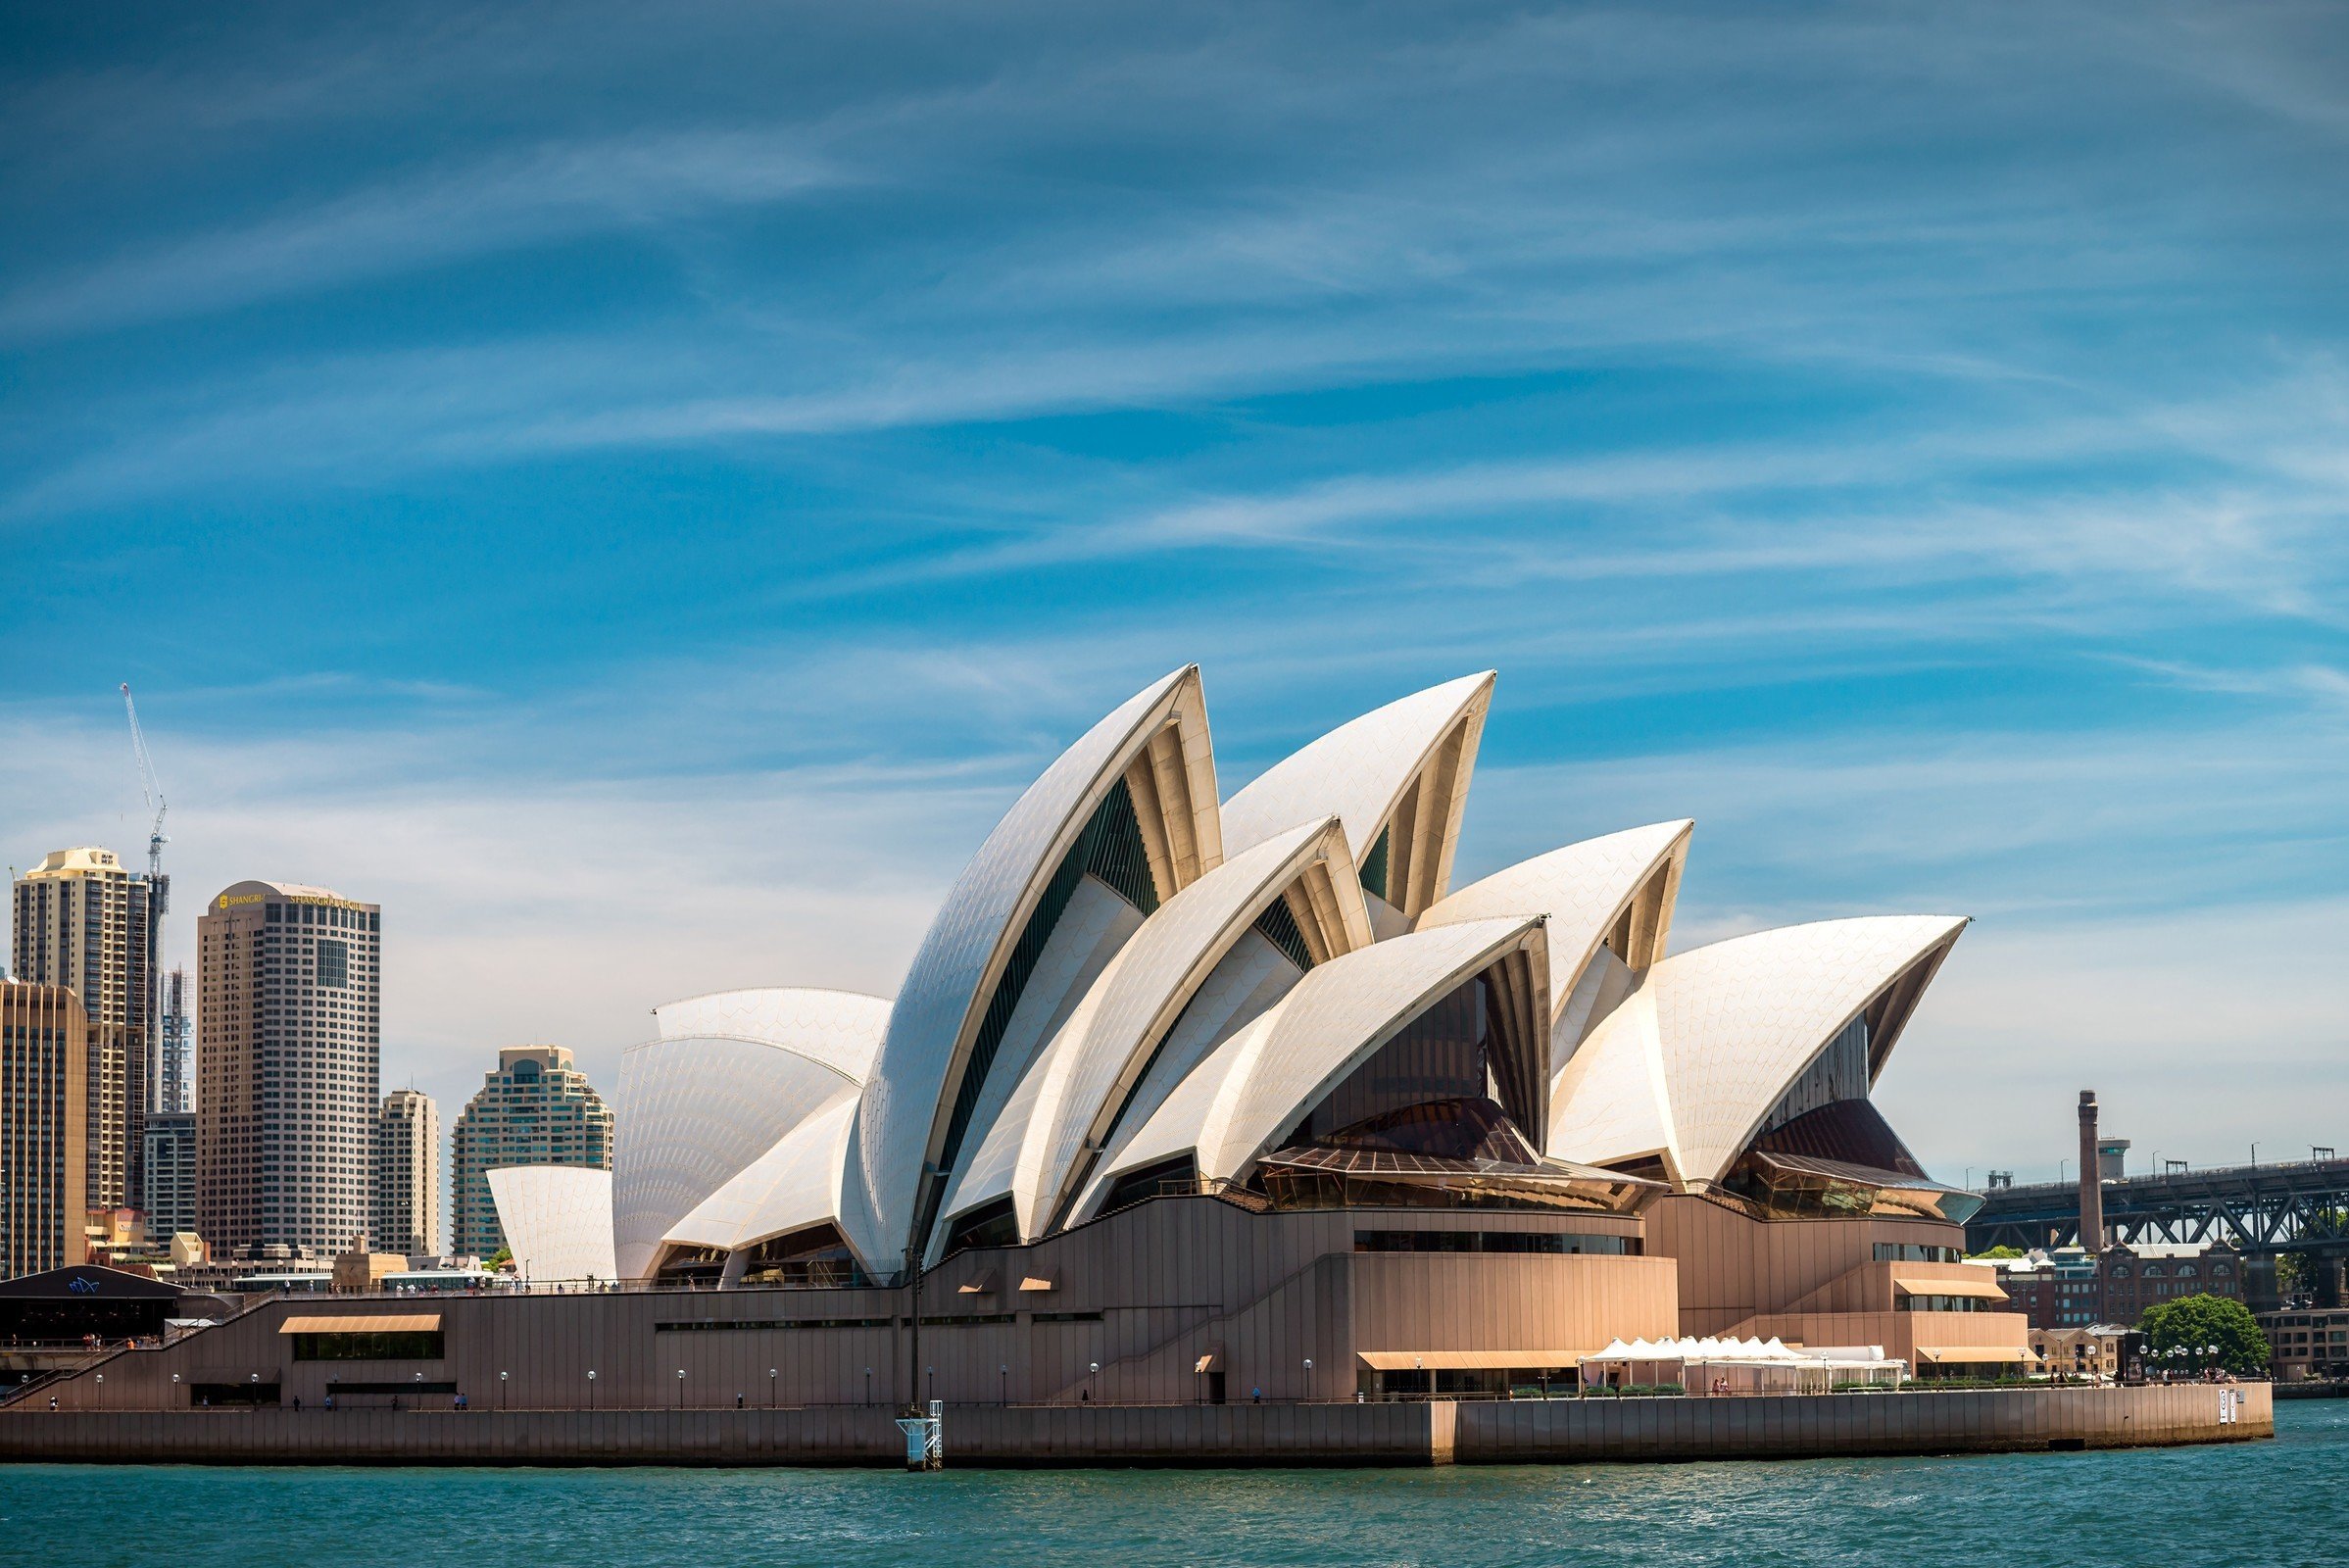 Сидней город какого государства. Сиднейский оперный театр, Сидней, Австралия. Оперный театр в Сиднее Австралия. Опера Хаус Сидней Австралия. Оперный театр Сидней архитектура.